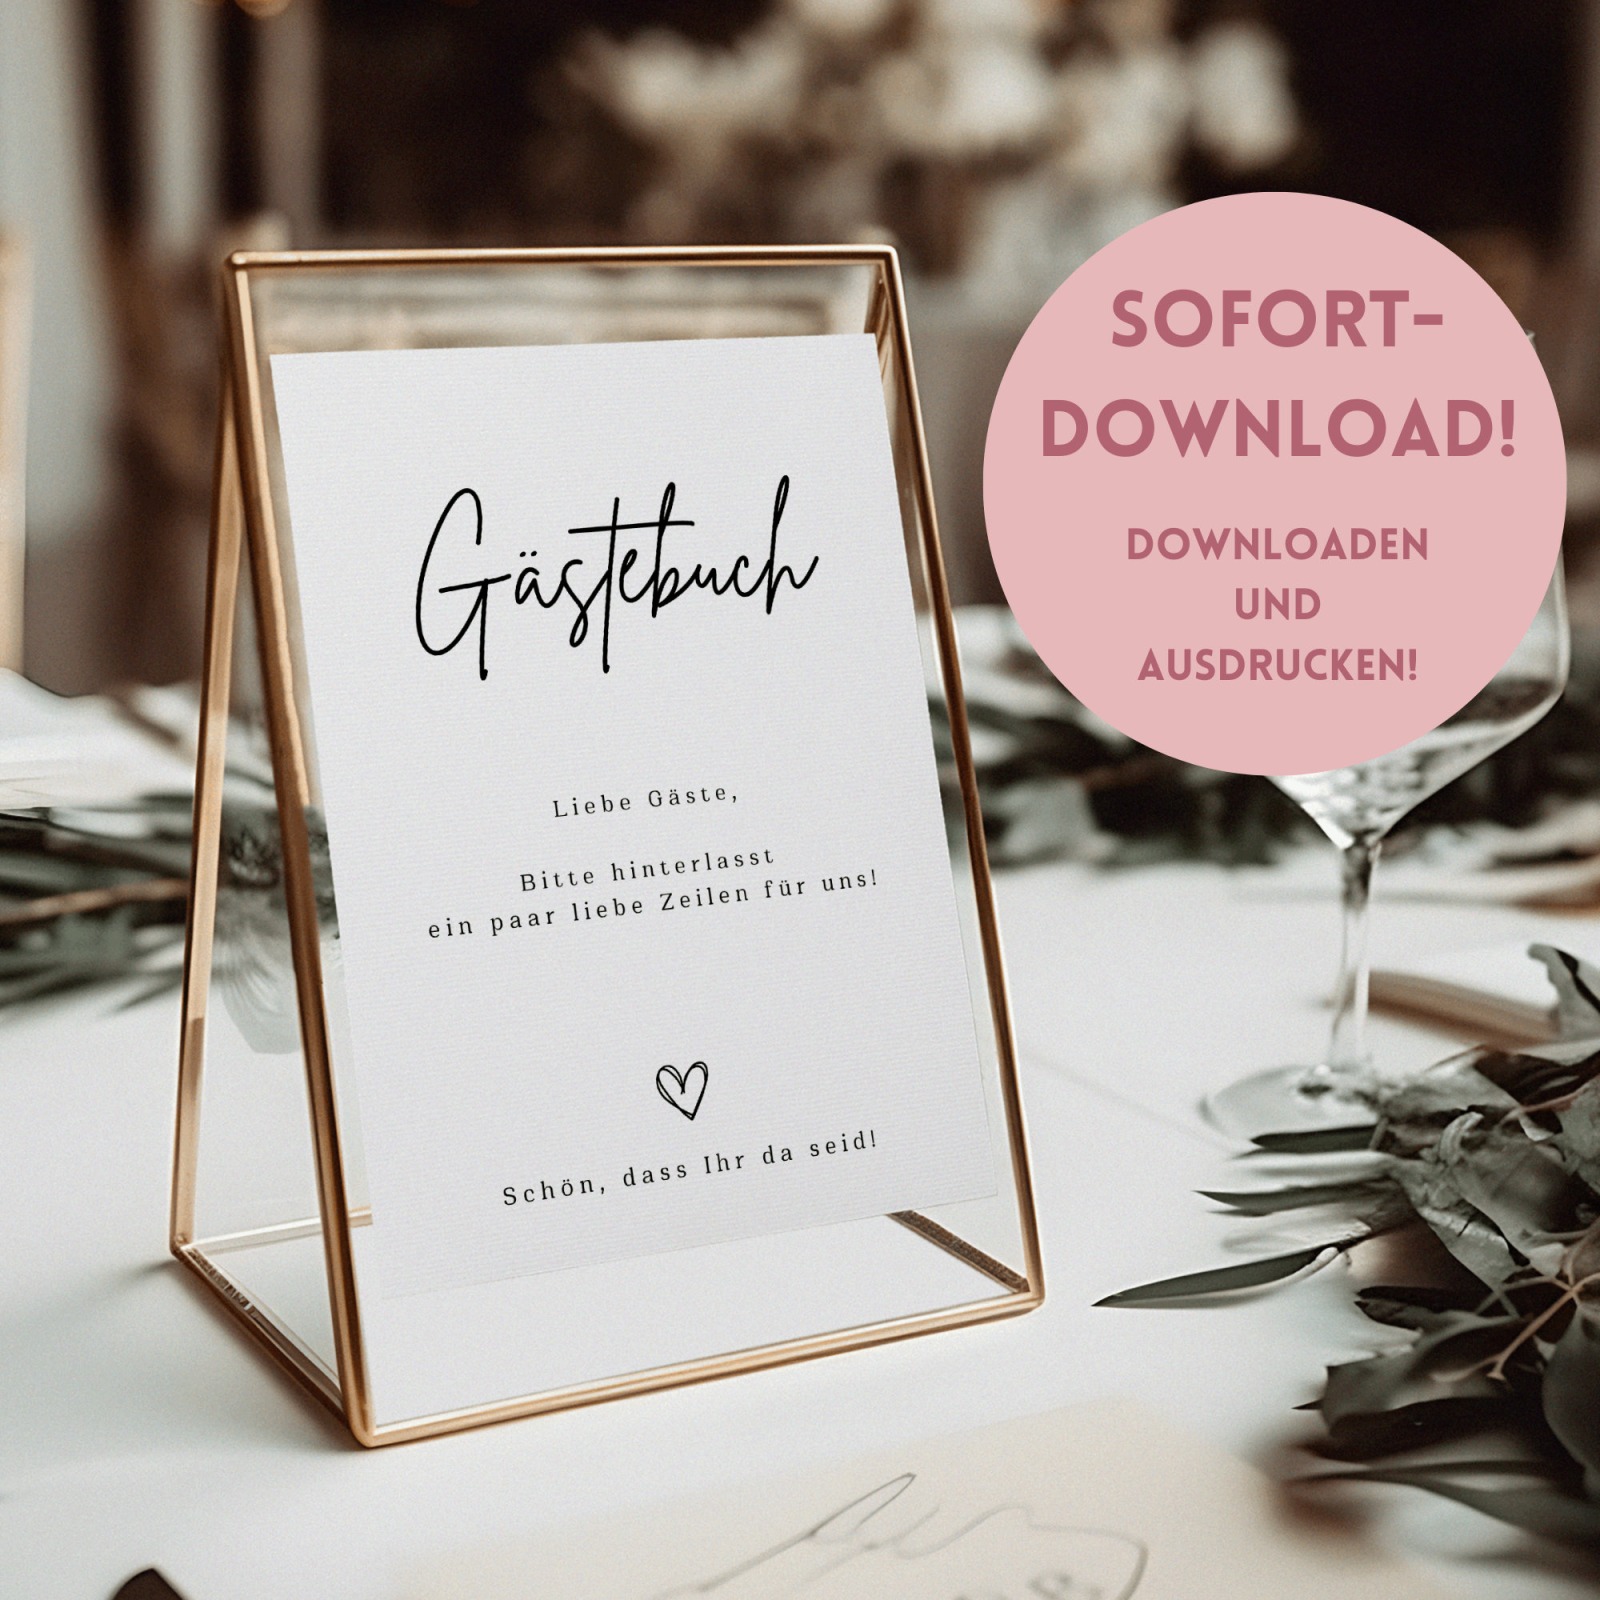 Gästebuch Digitaldruck - PDF zum selbst drucken - Digitaler Download für ein Hochzeitsschild